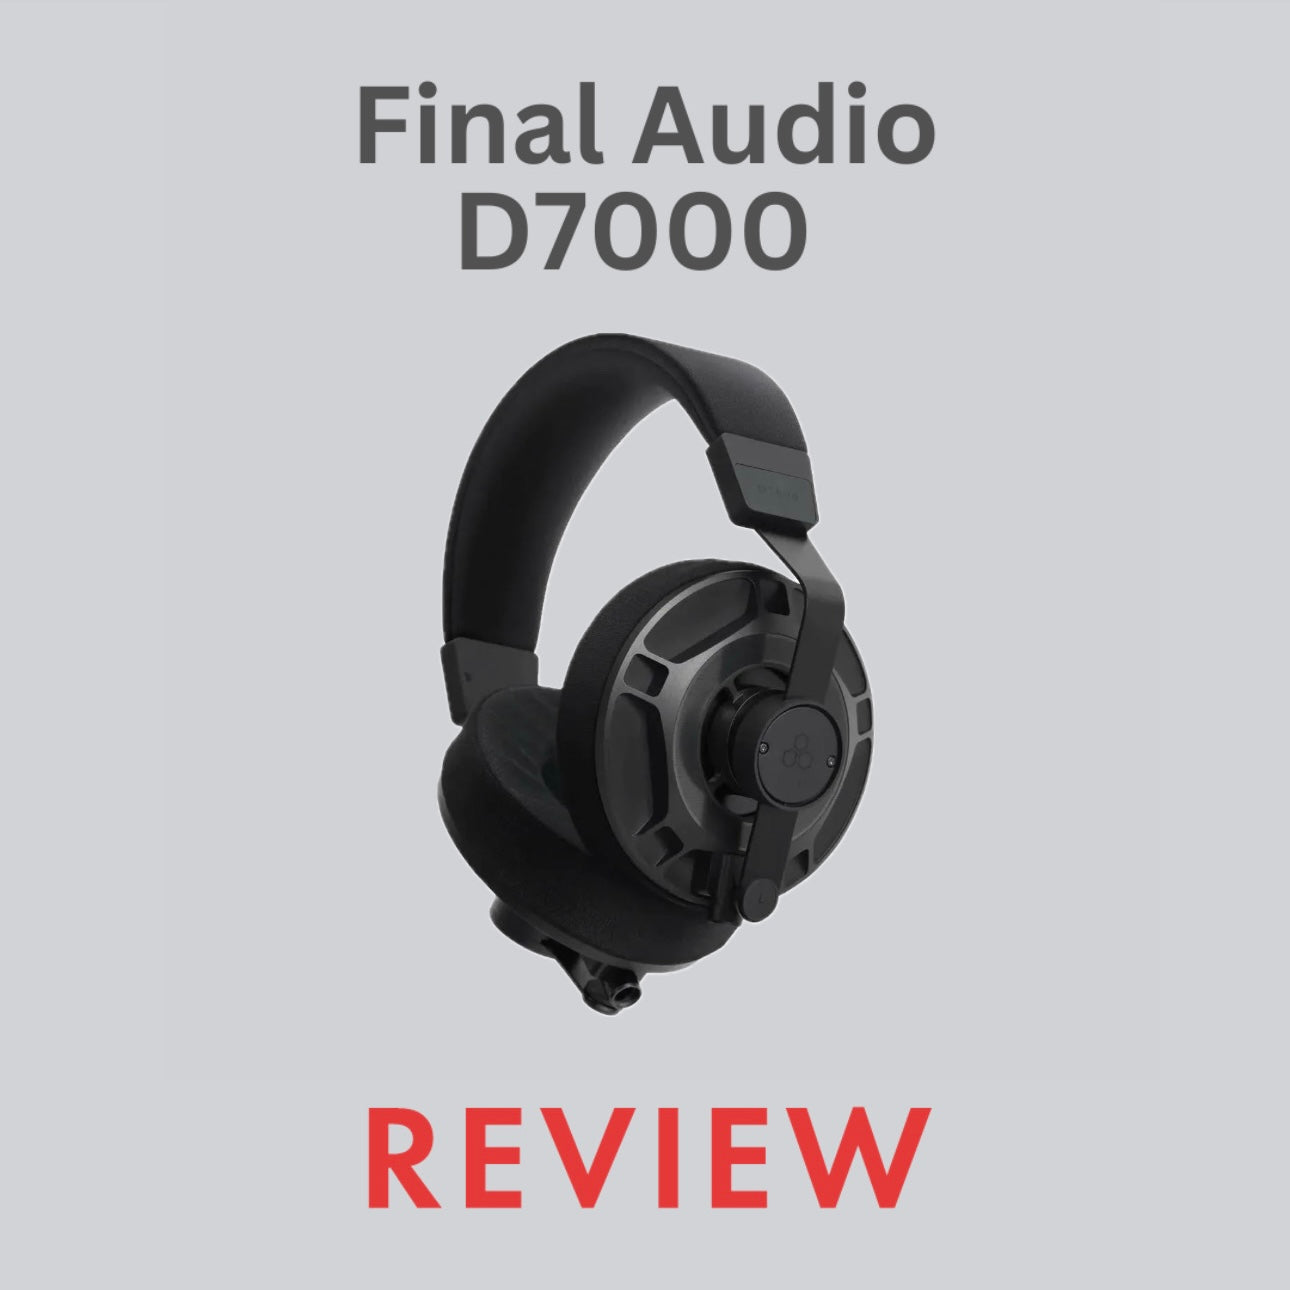 Final Audio D7000 Review